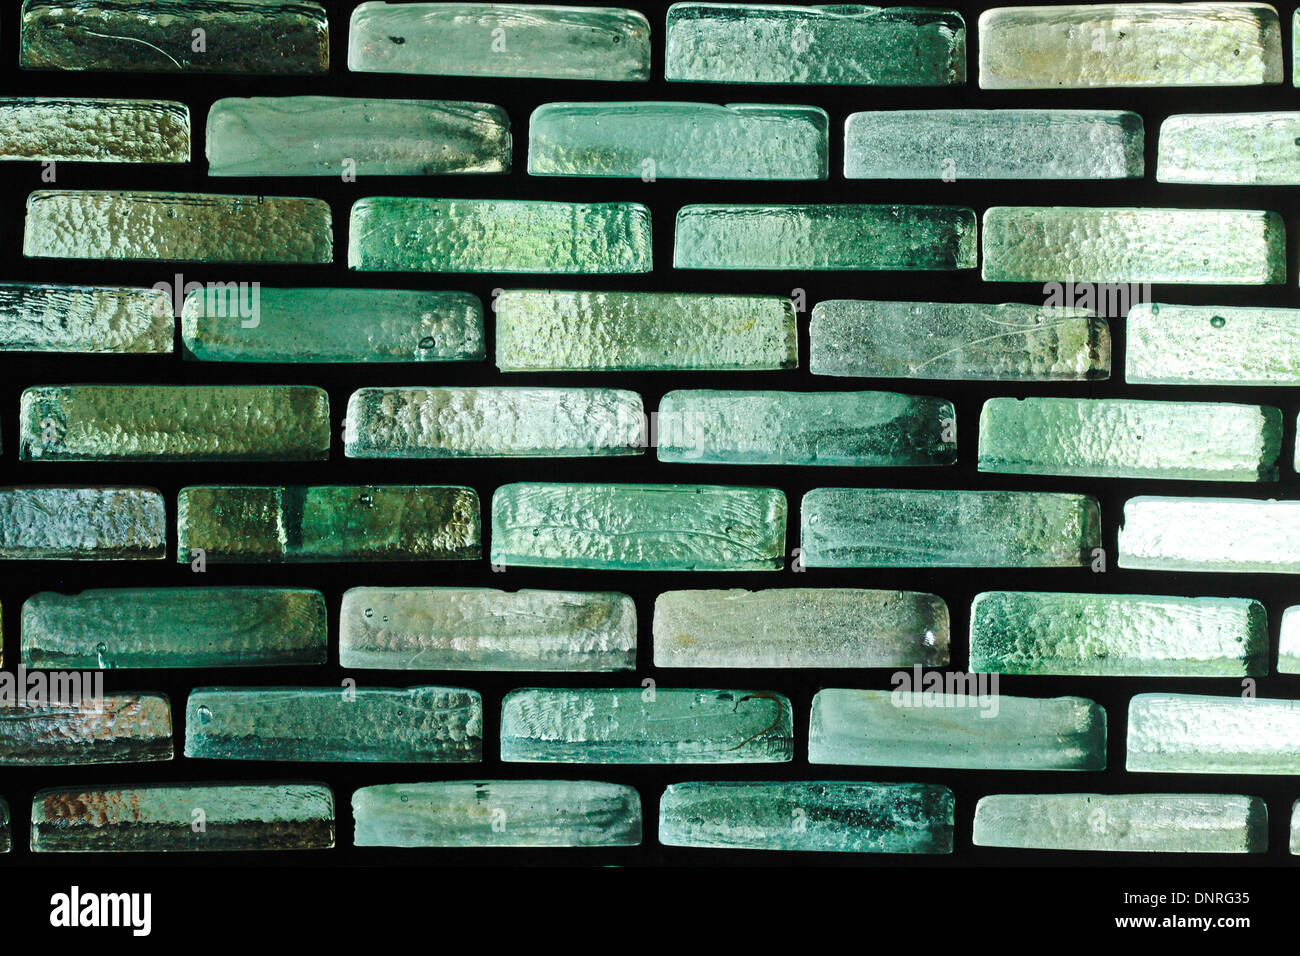 Muro de ladrillos de cristal como fondo Foto de stock